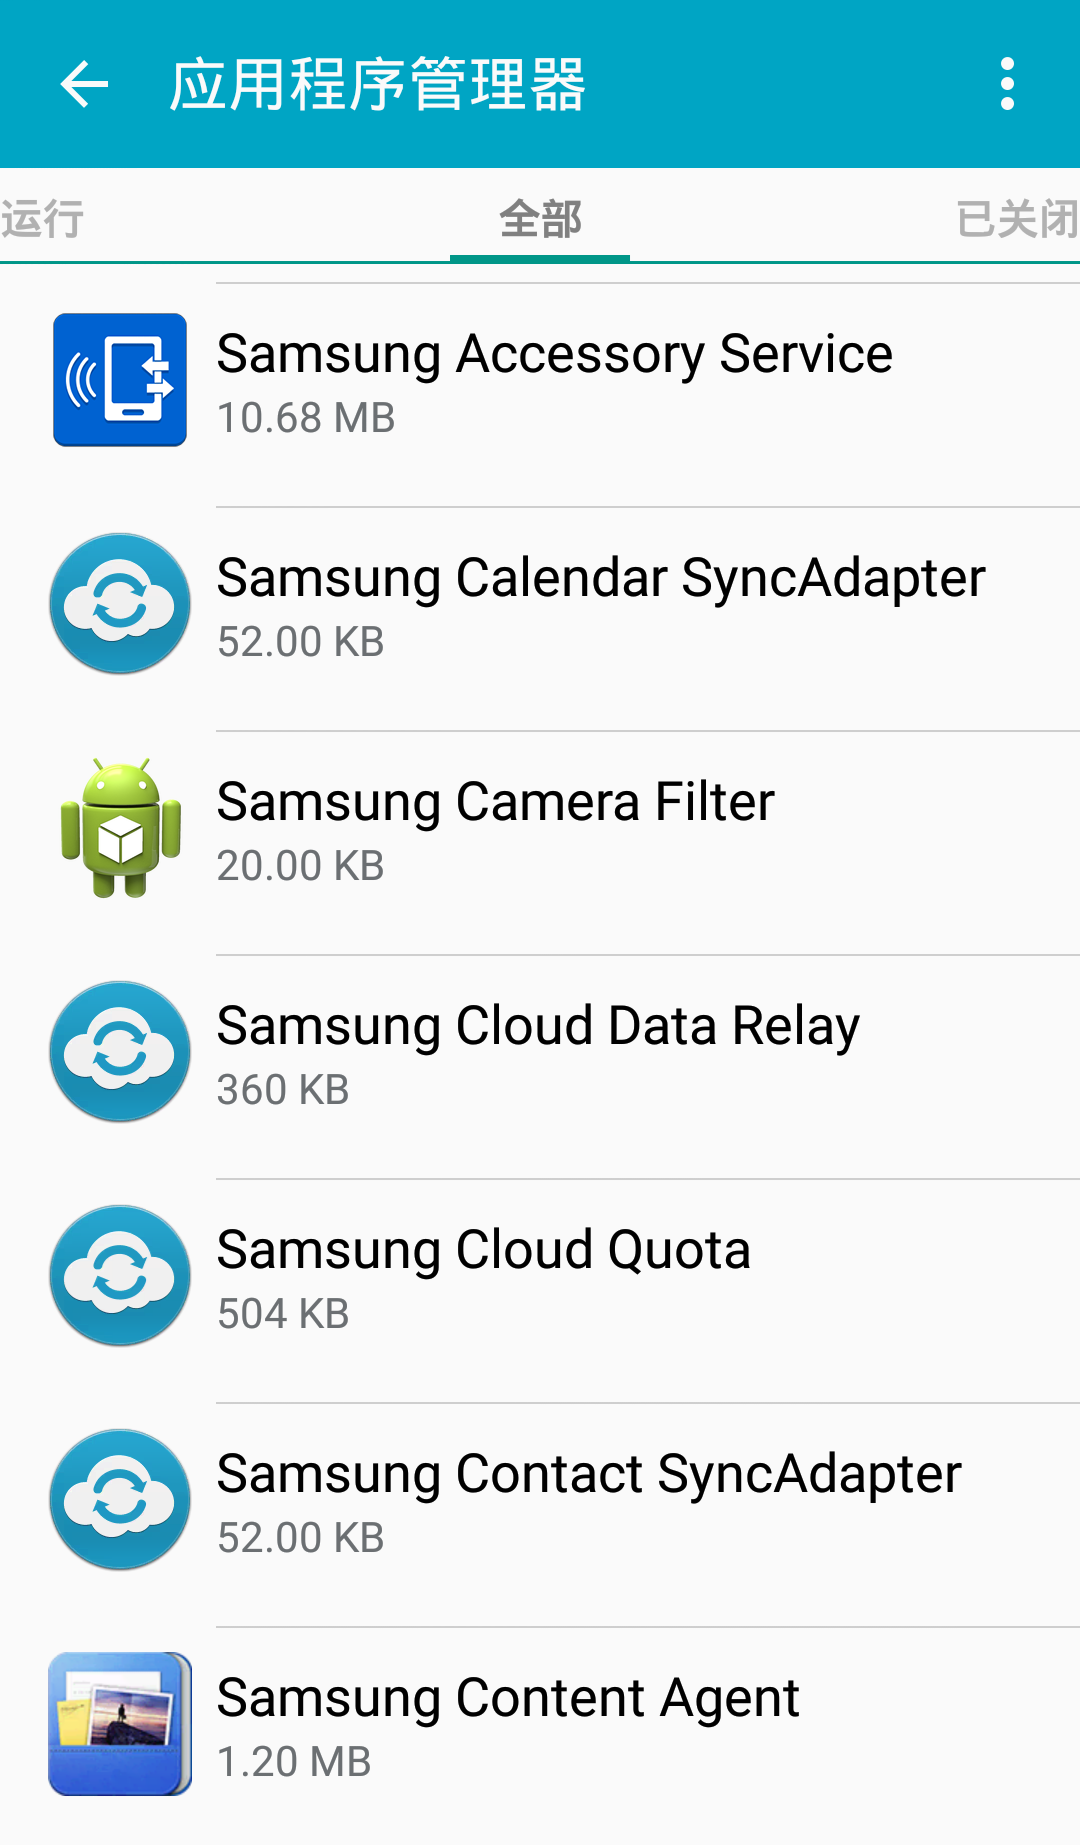 Samsung Accessory Service3